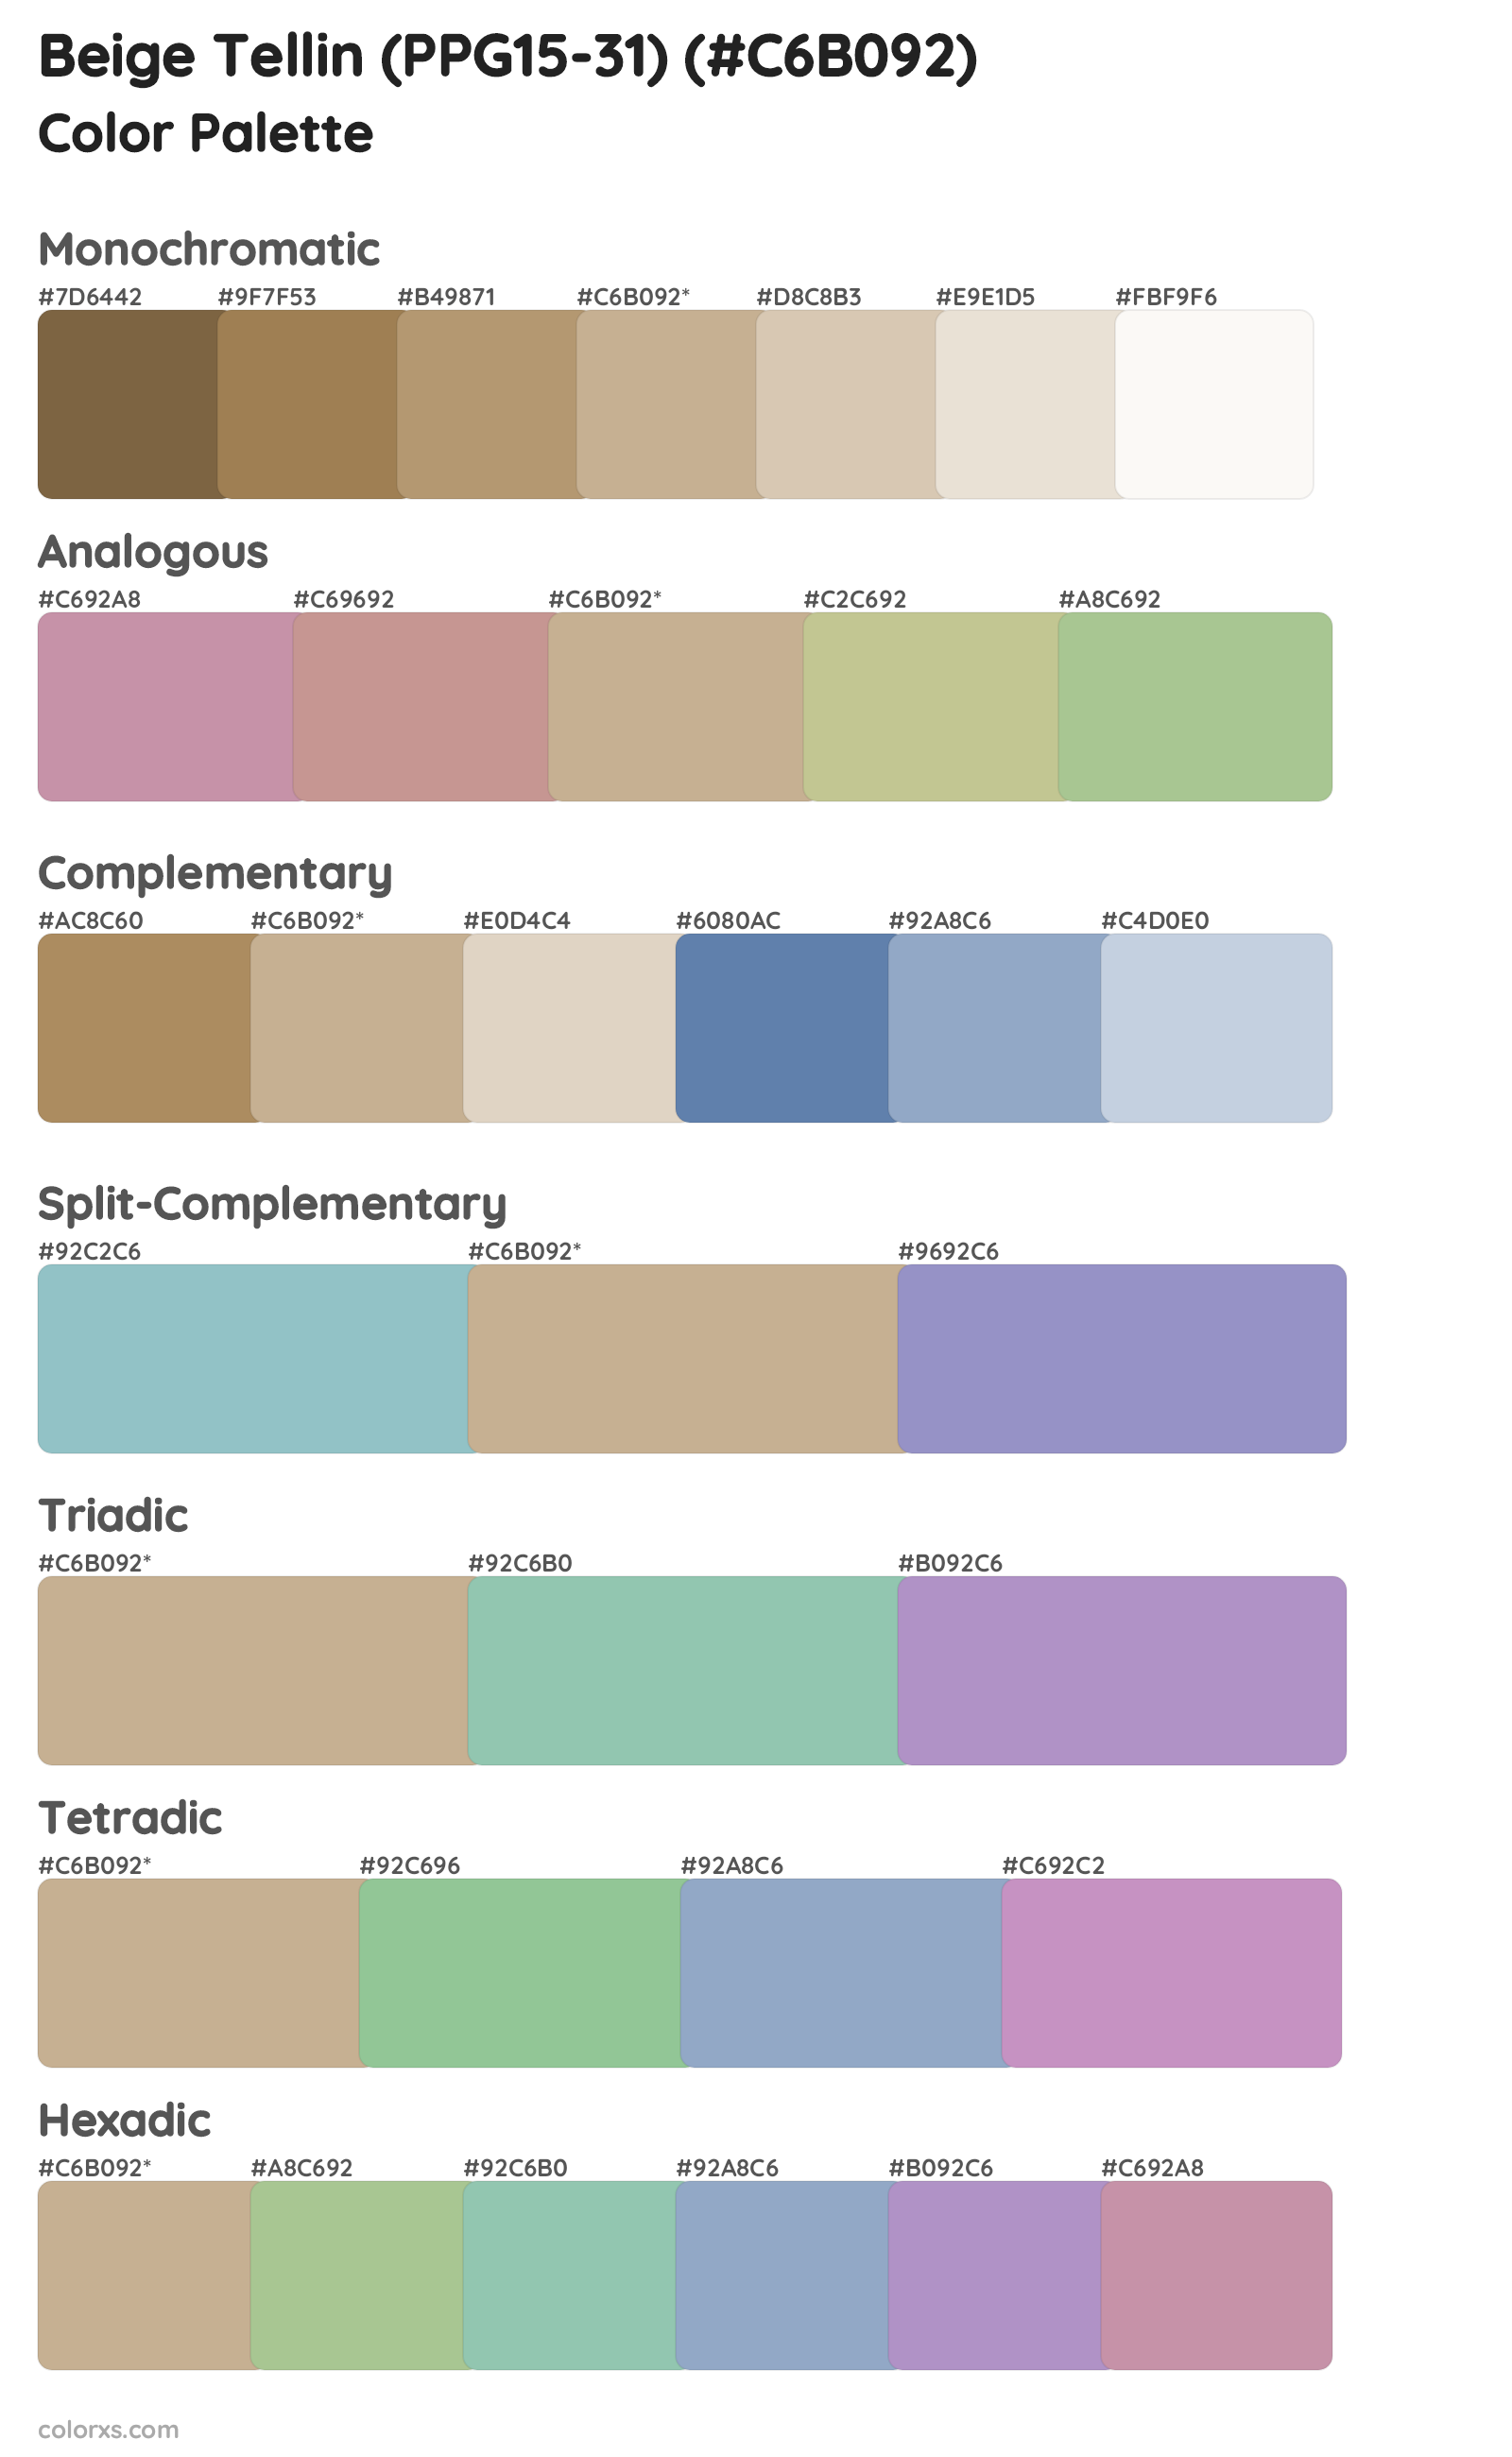 Beige Tellin (PPG15-31) Color Scheme Palettes